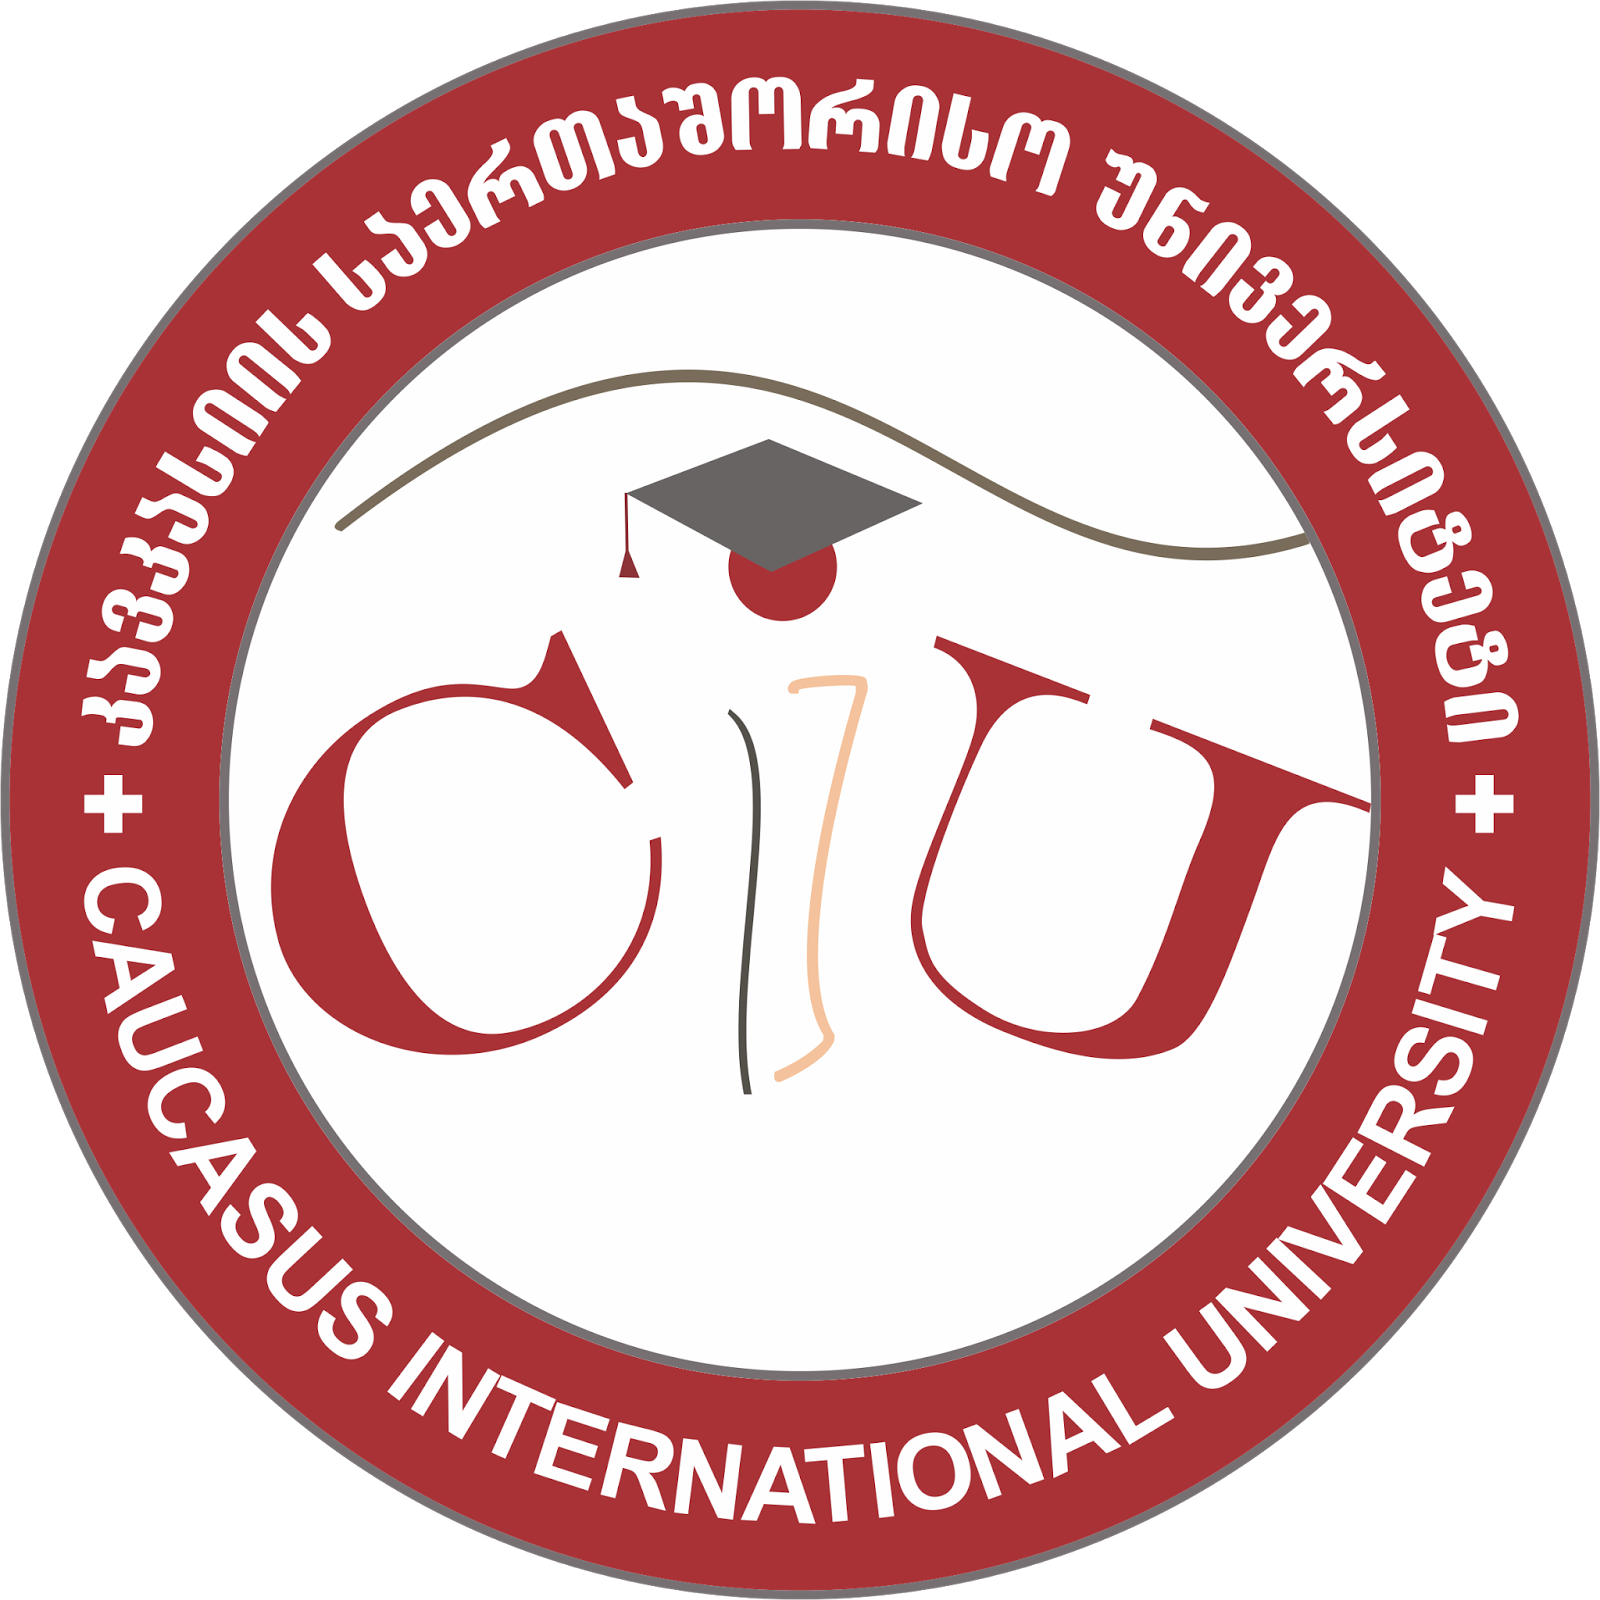 Caucasus International University - Georgia